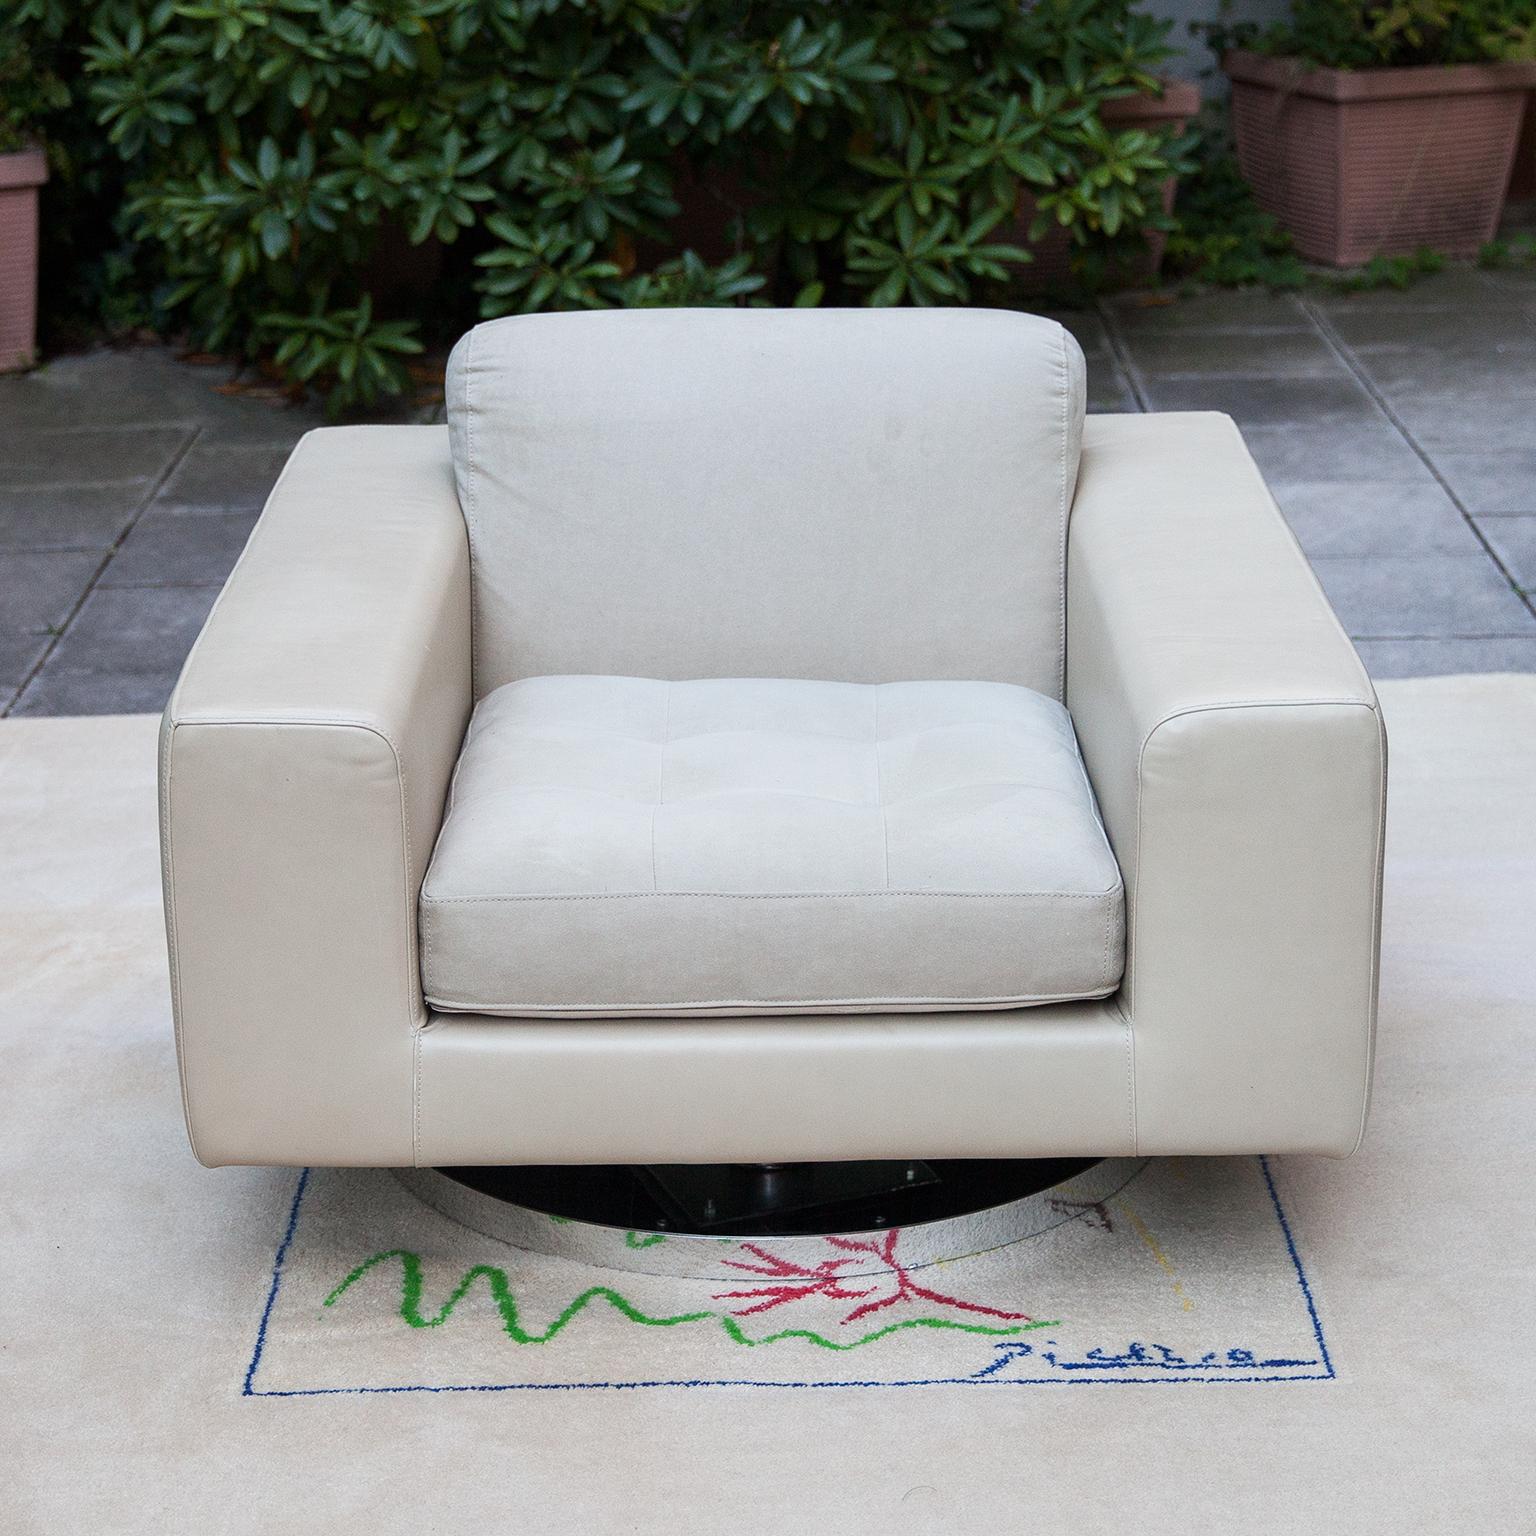 Le fauteuil de salon extrêmement confortable et minimaliste conçu par Vladimir Kagan - Collection New York - pour Directional repose sur une base ronde pivotante chromée. Les côtés en cuir sont en cuir nappa crème, les coussins de l'assise et du